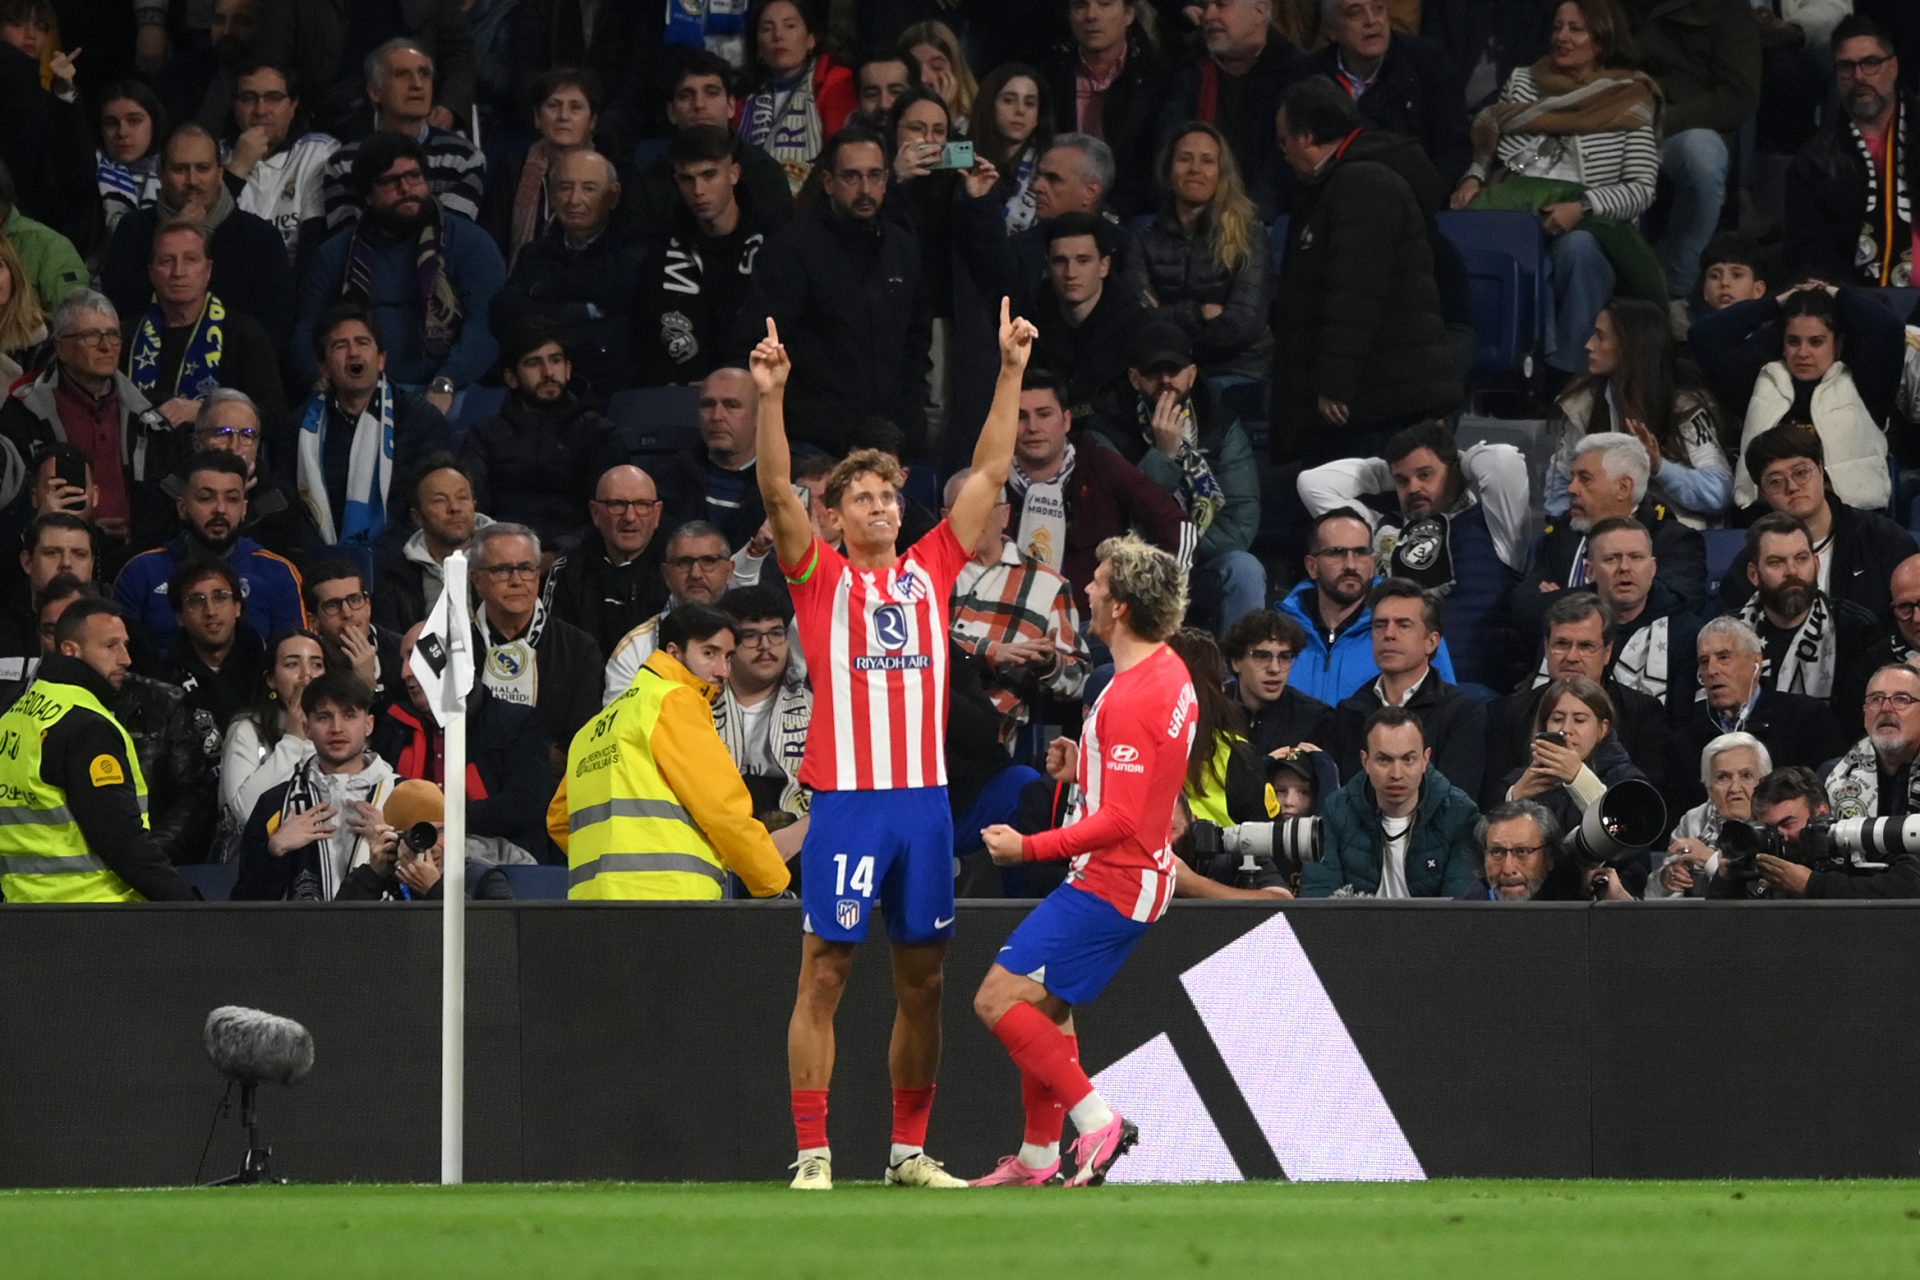 Bajas, goles anulados y otras polémicas: los memes del Real Madrid - Atlético de Madrid